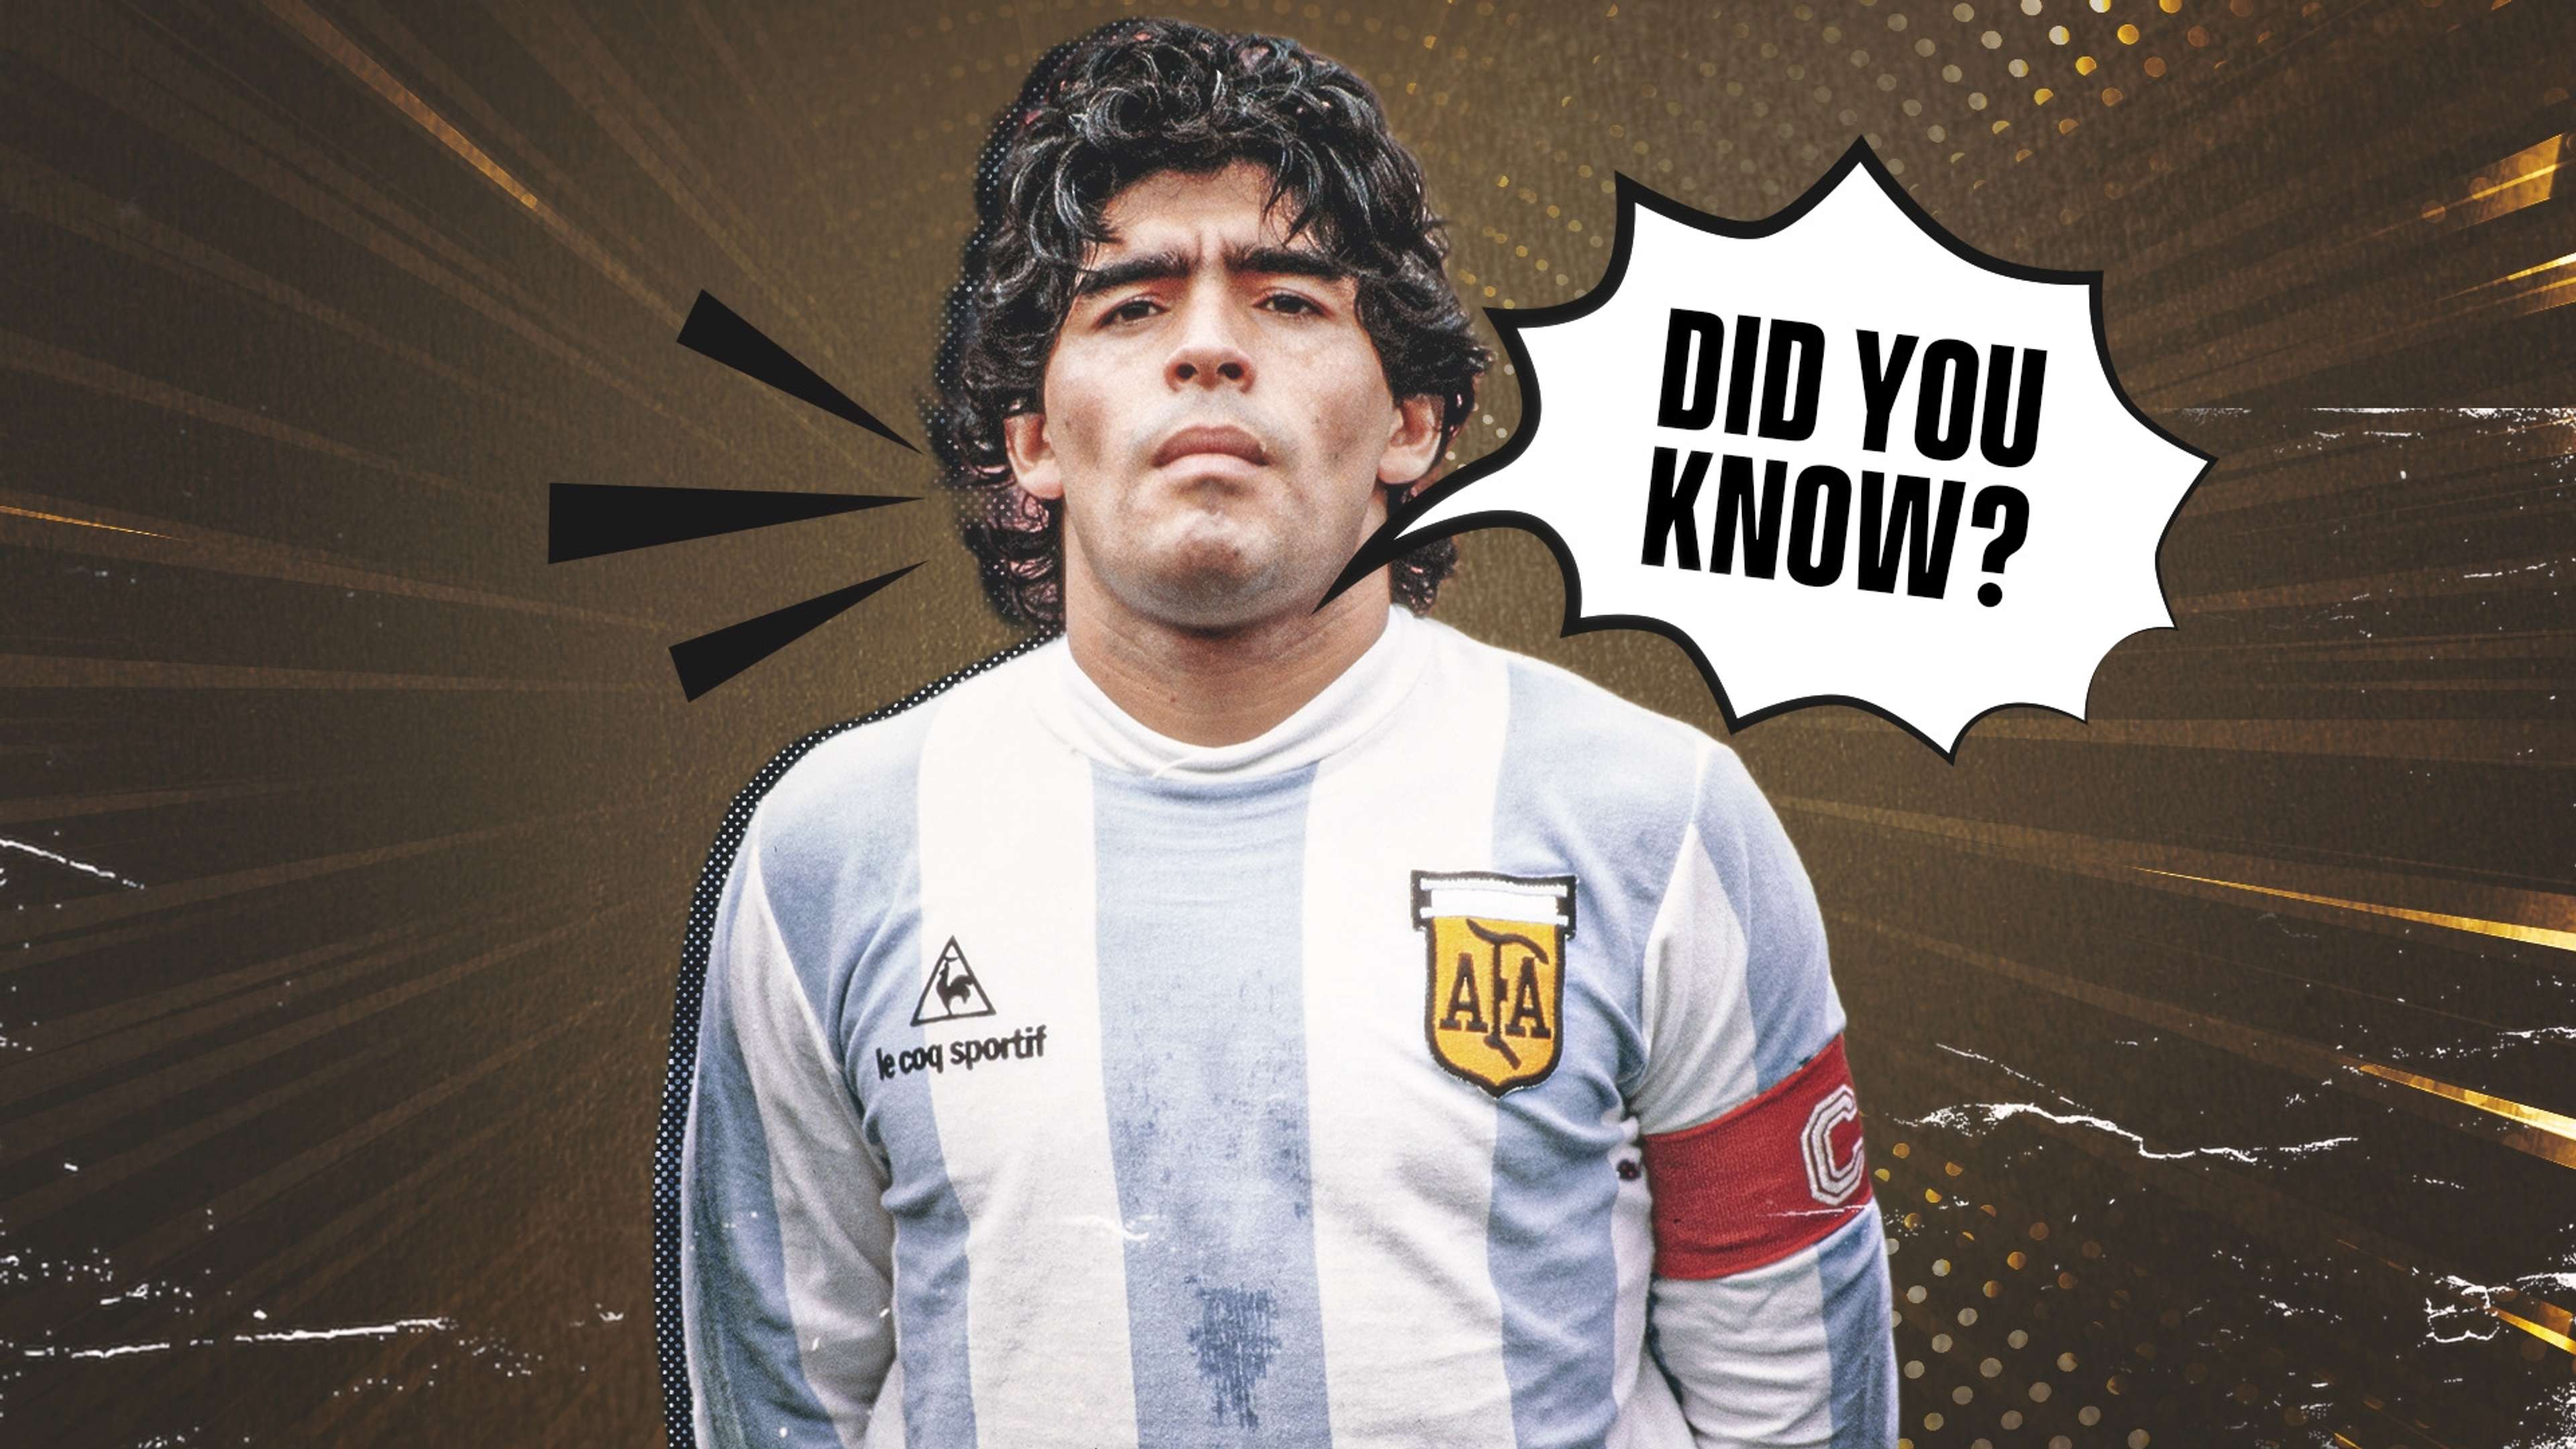 Diego Maradona Did you know